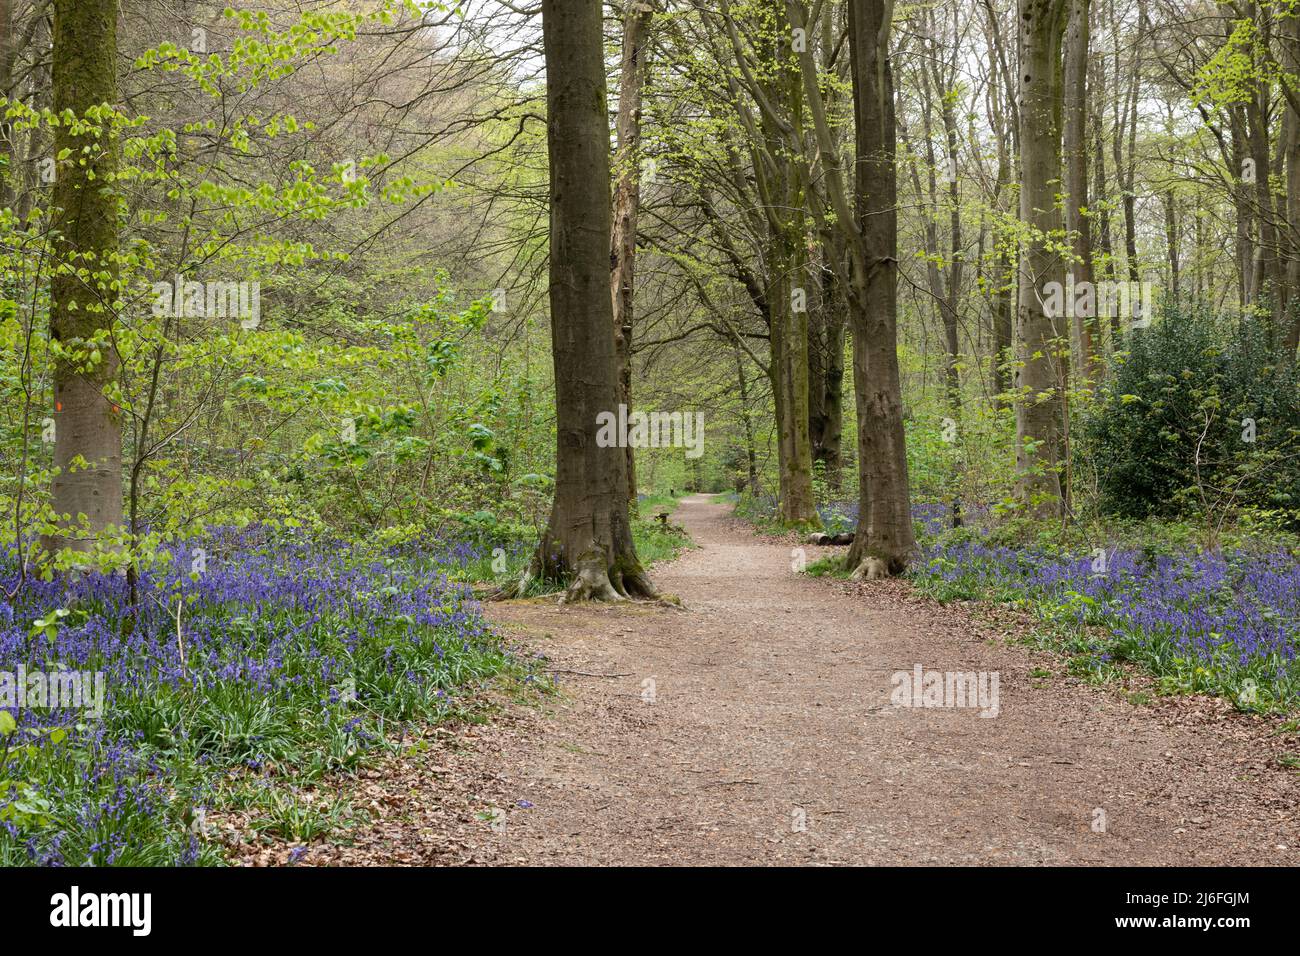 Chemin à travers le printemps Bluebells à West Woods bluebell Wood, près de Marlborough, Wiltshire, Angleterre, Royaume-Uni Banque D'Images